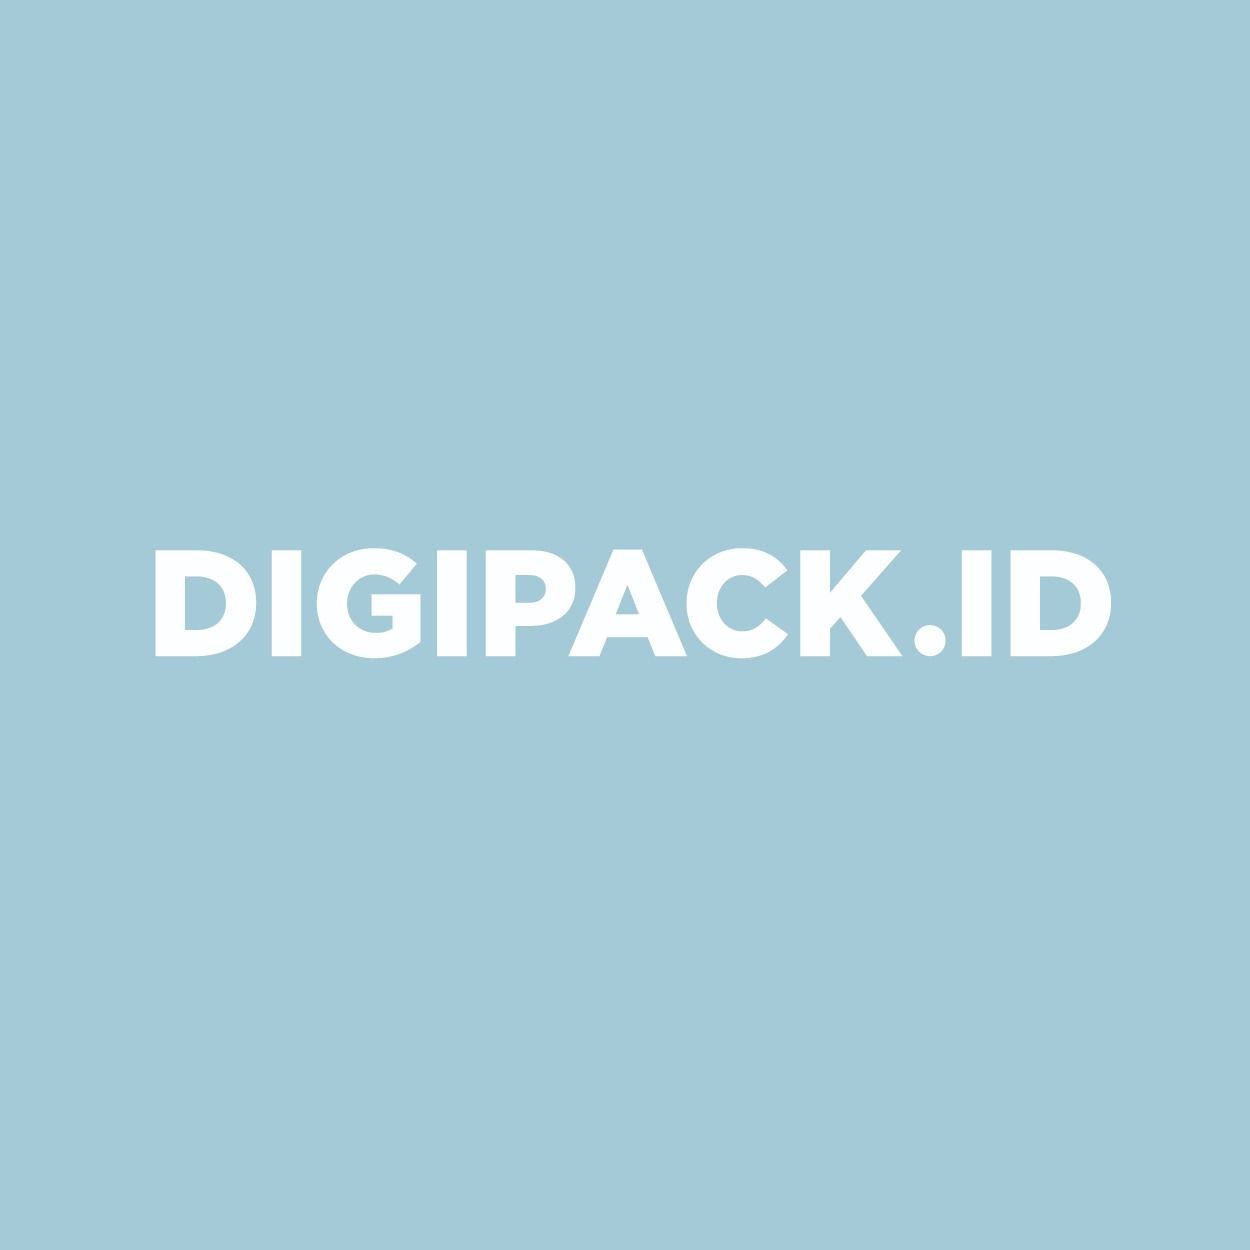 Digipack.id